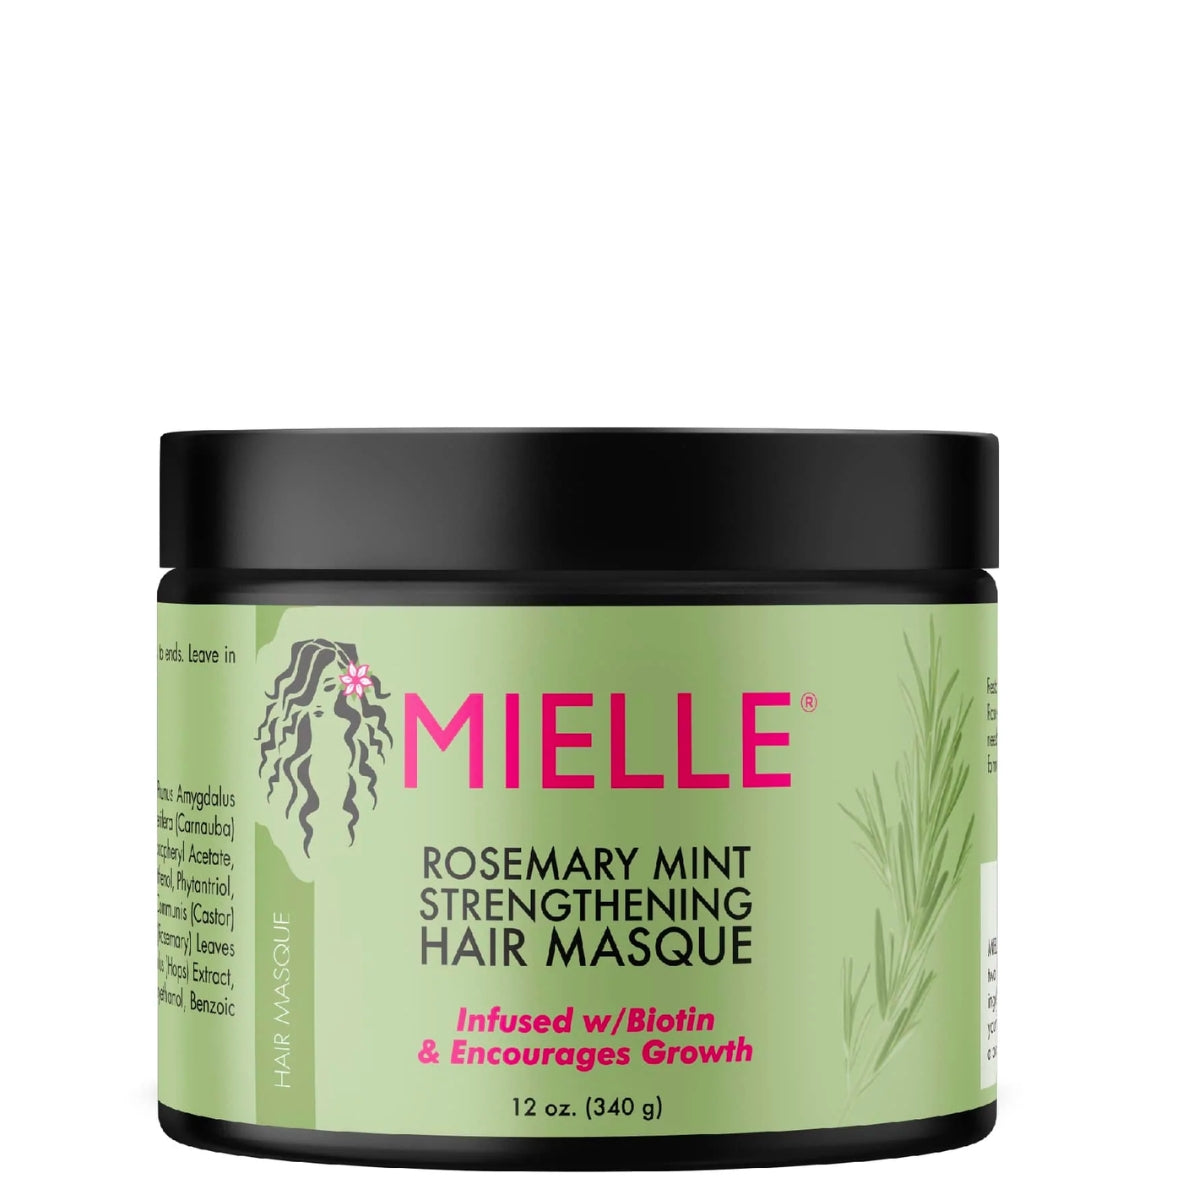 Aceite Mielle, para la caida y crecimiento de cabello. Les cuento en 3